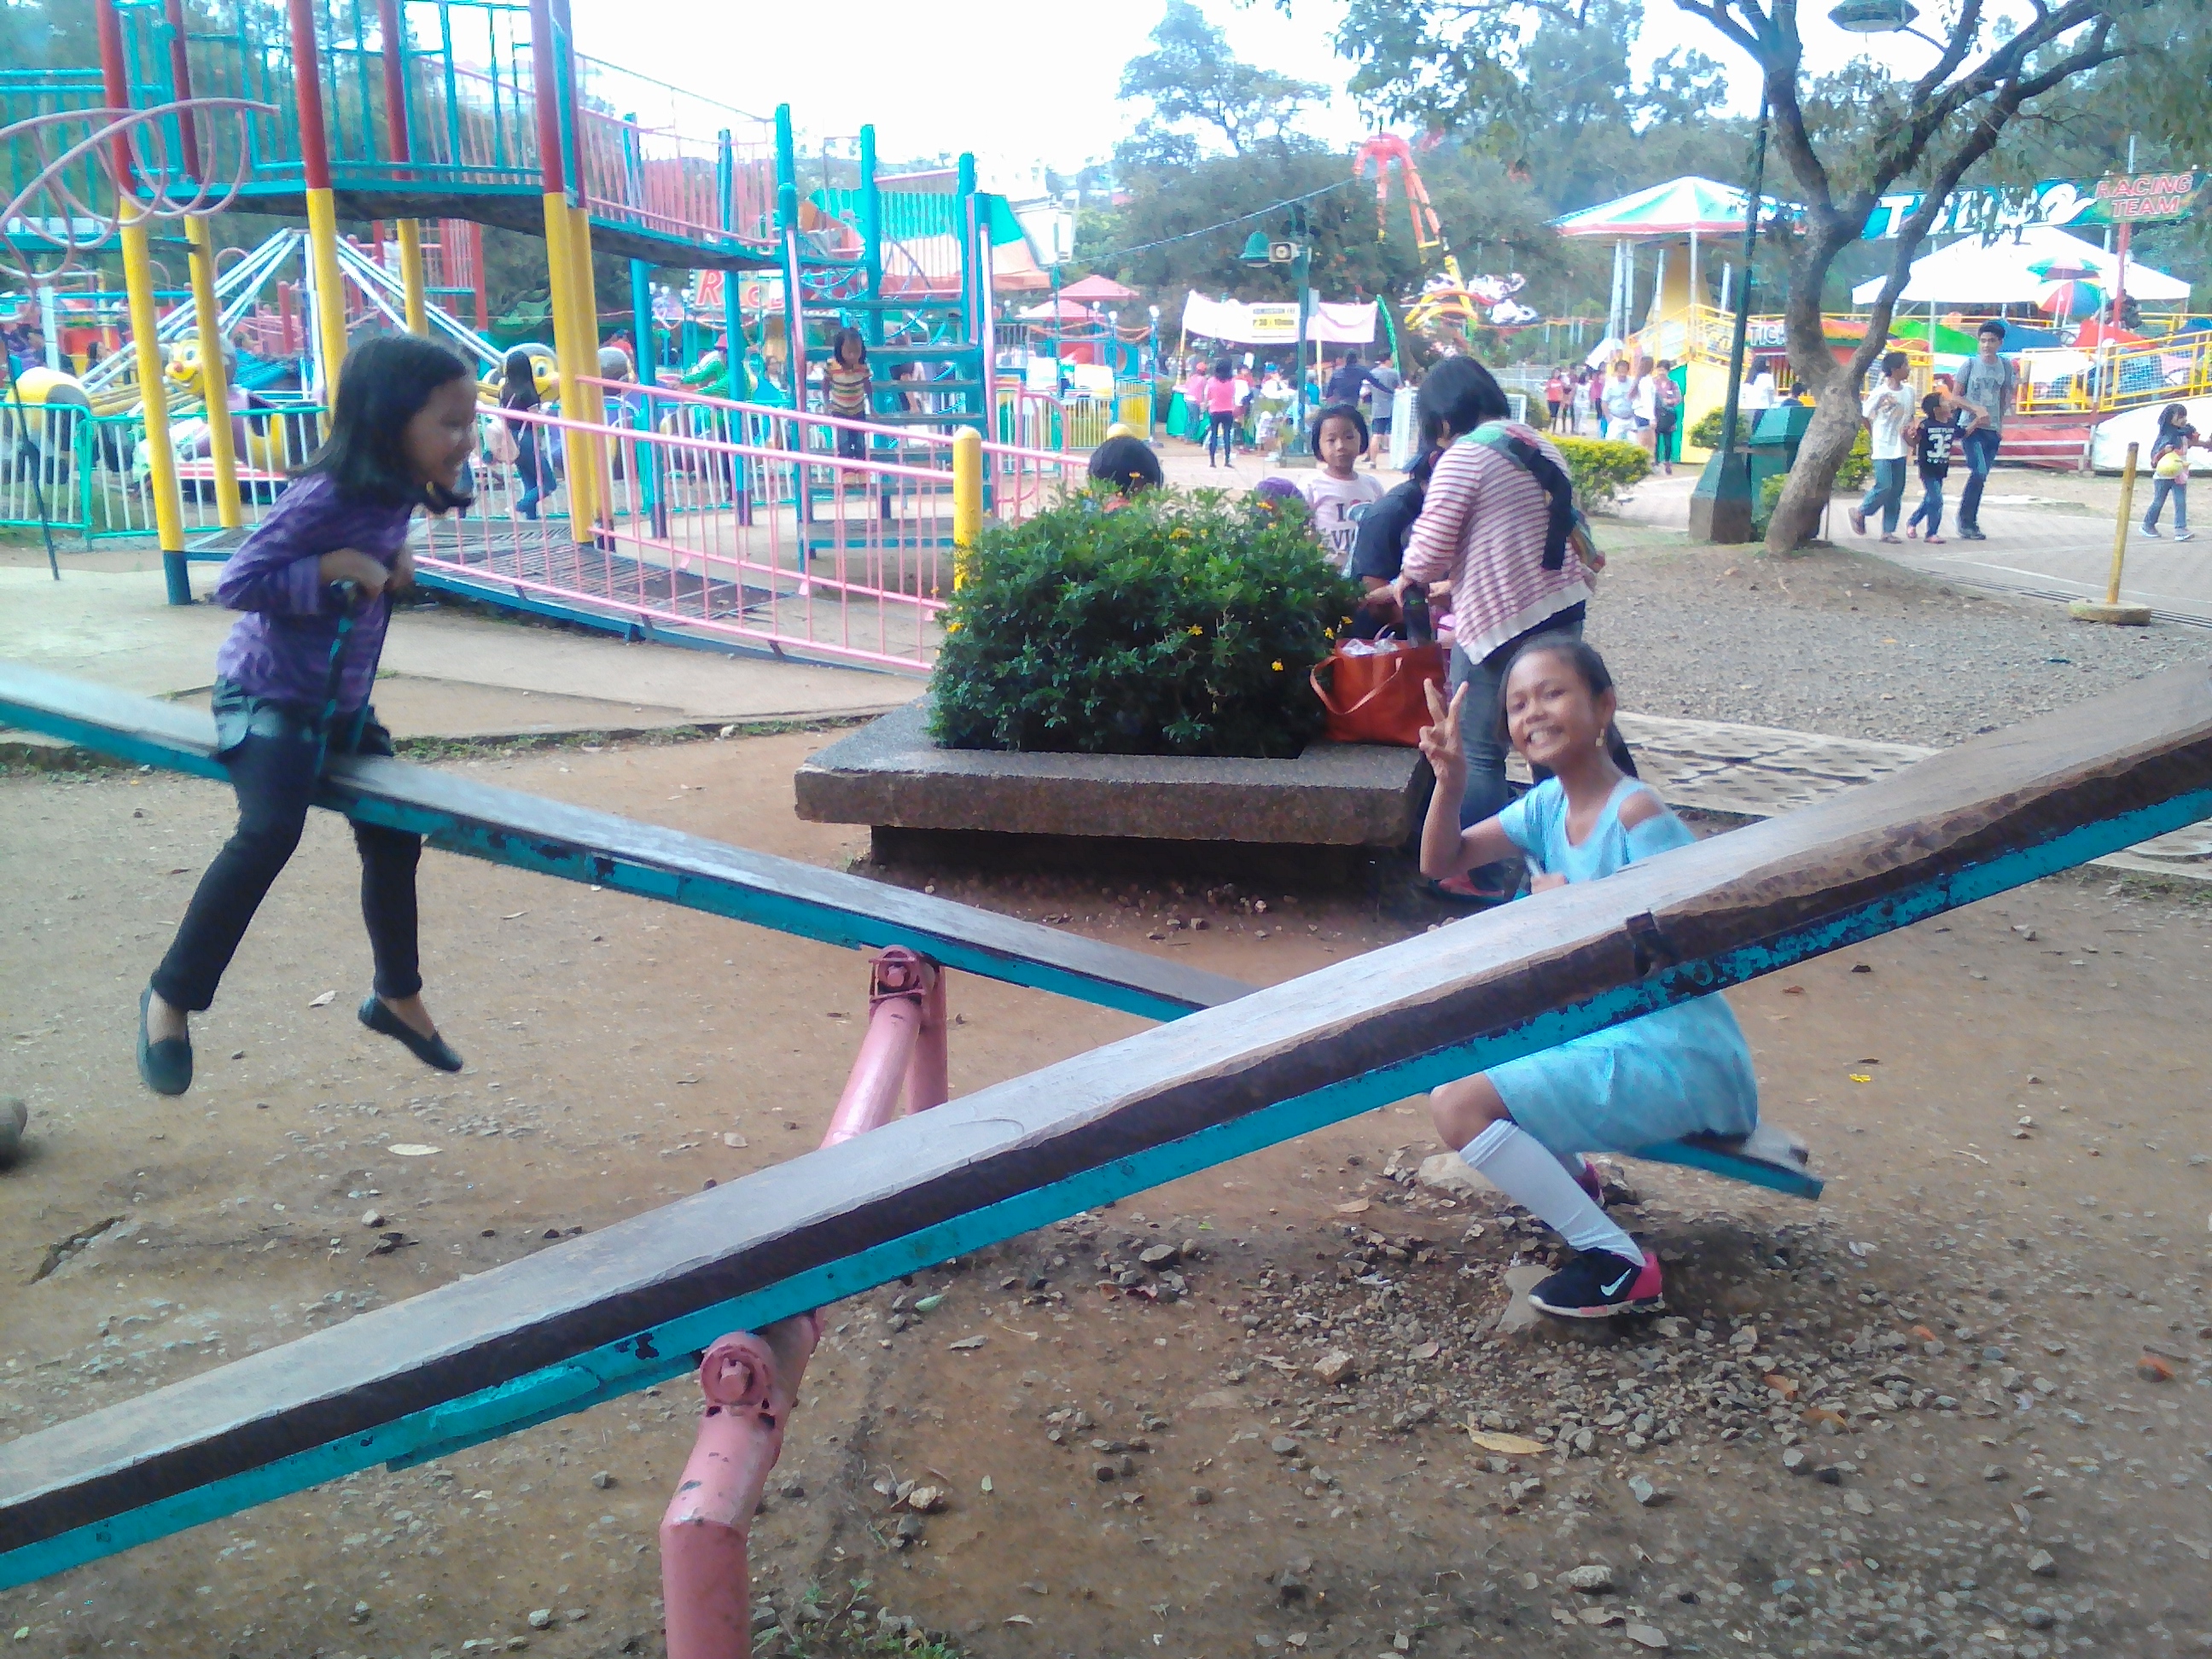 My kids at the playground